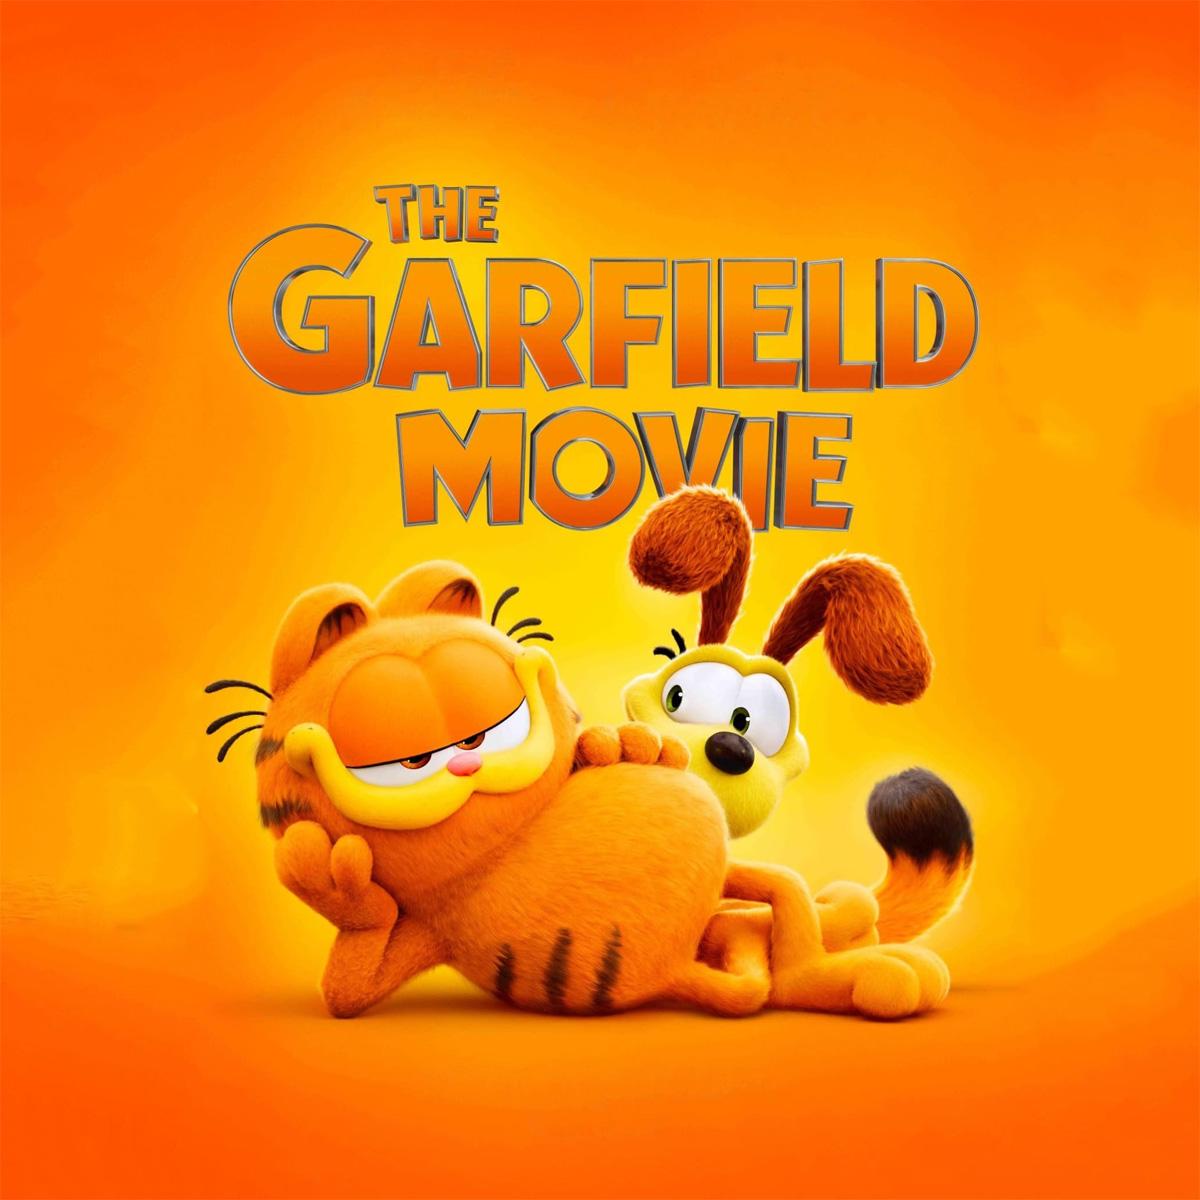 The Garfield Movie Movie Tickets Buy 2 Get 1 Free